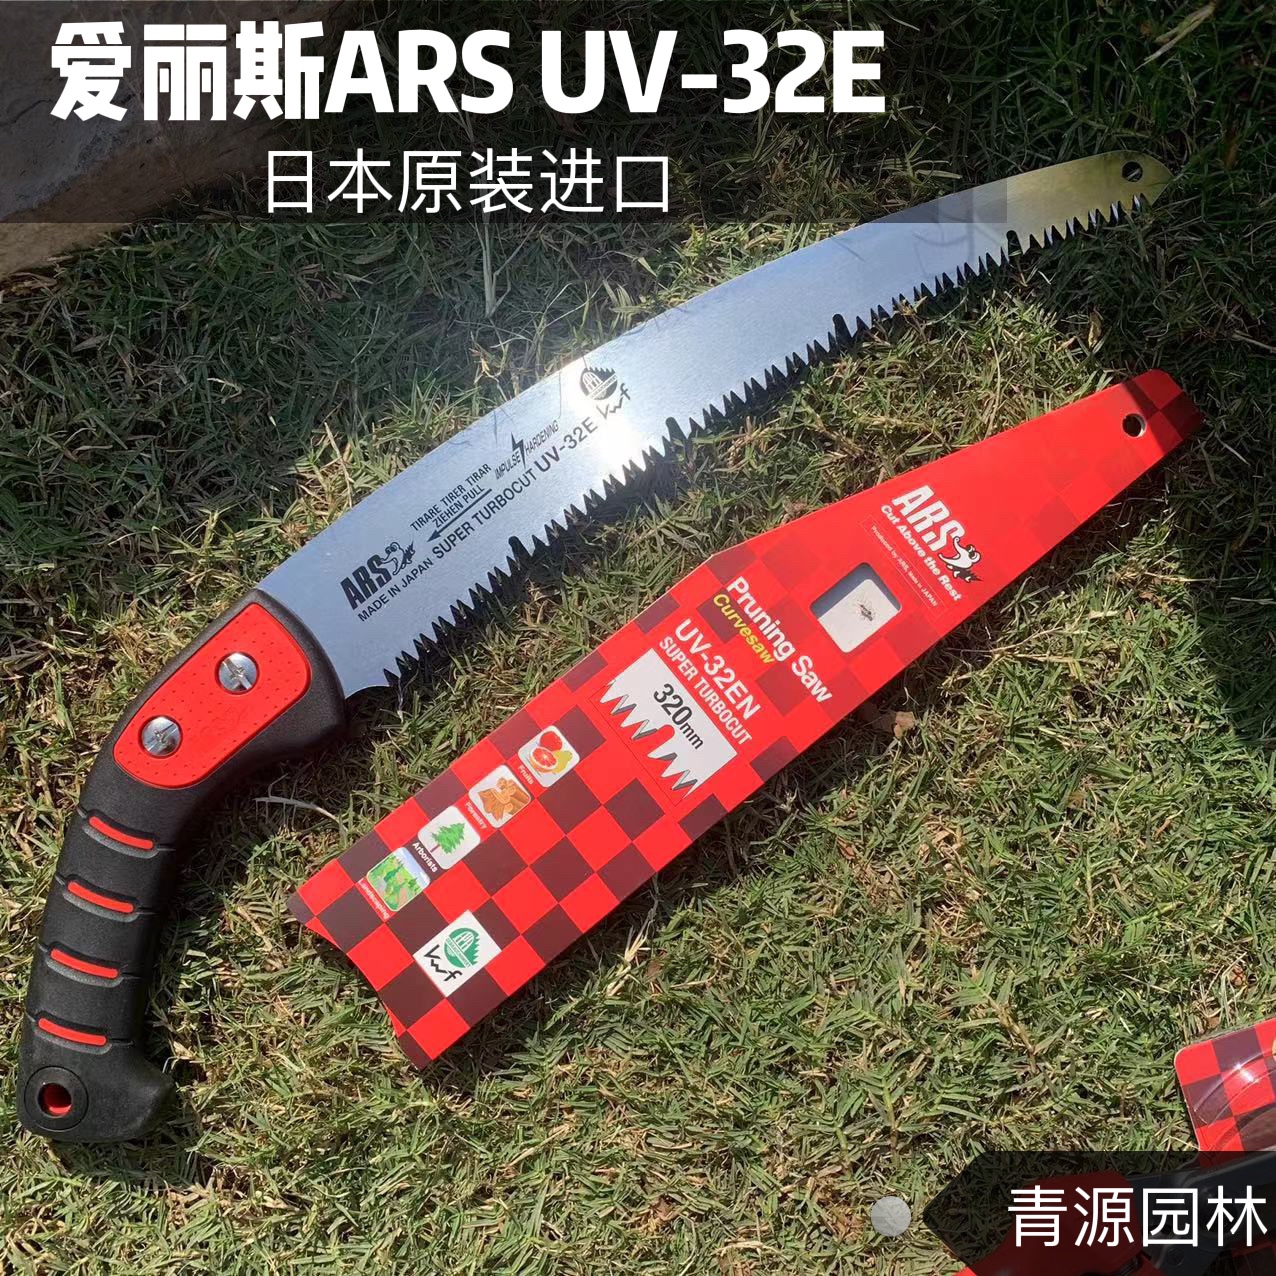 园艺修枝手锯木工锯进口日本爱丽斯 ARS UV32EN园林工具伐木锯子